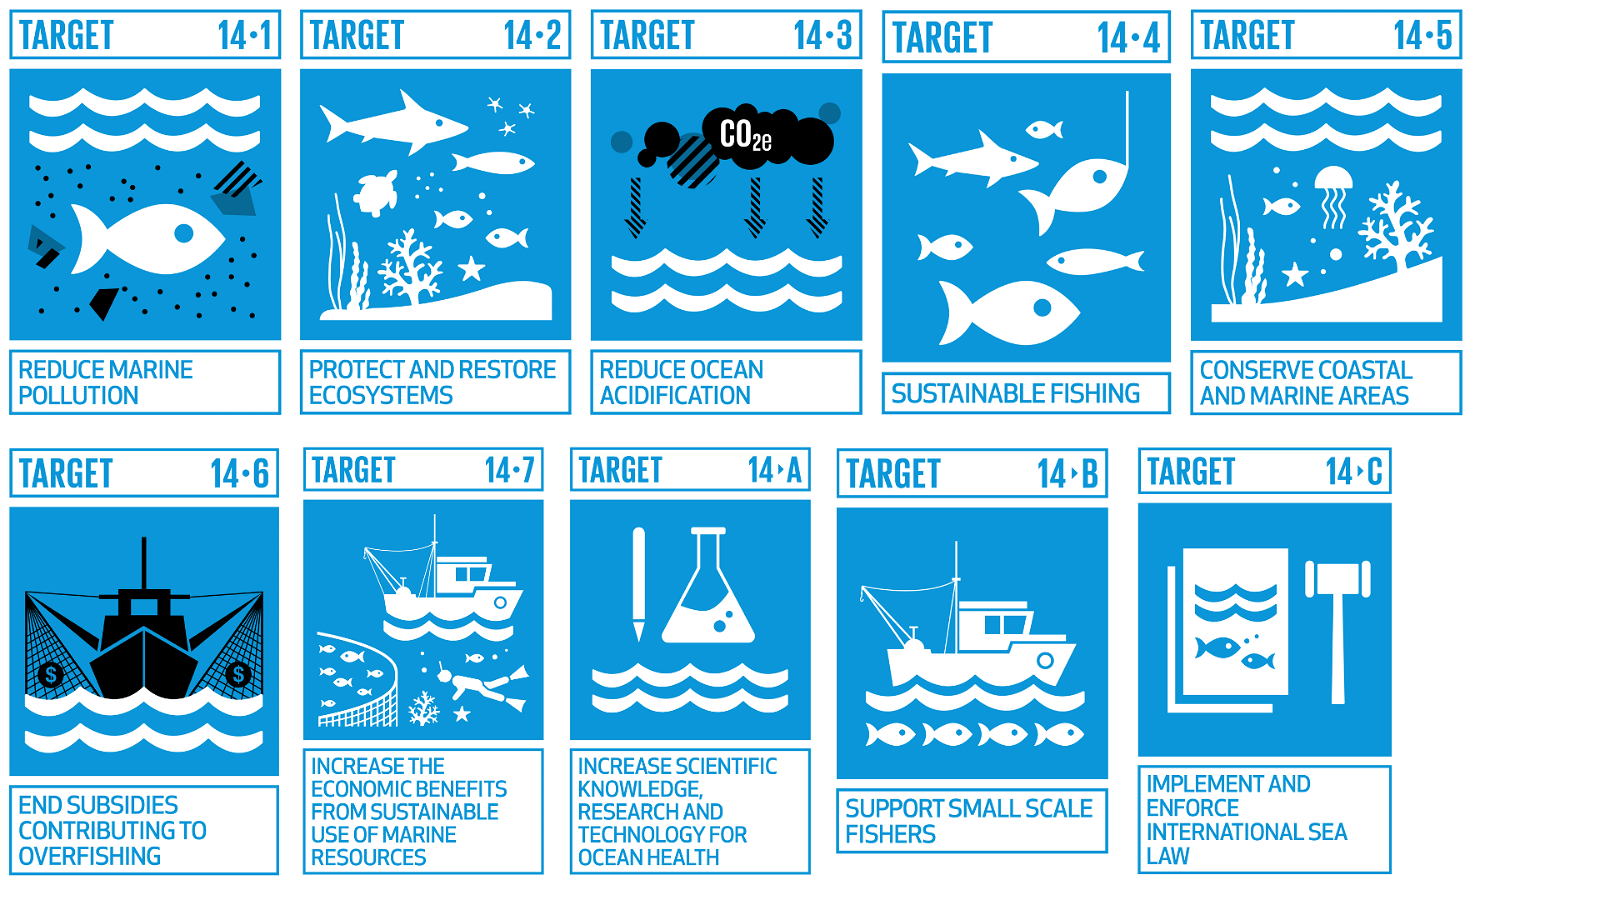 SDG 14 targets